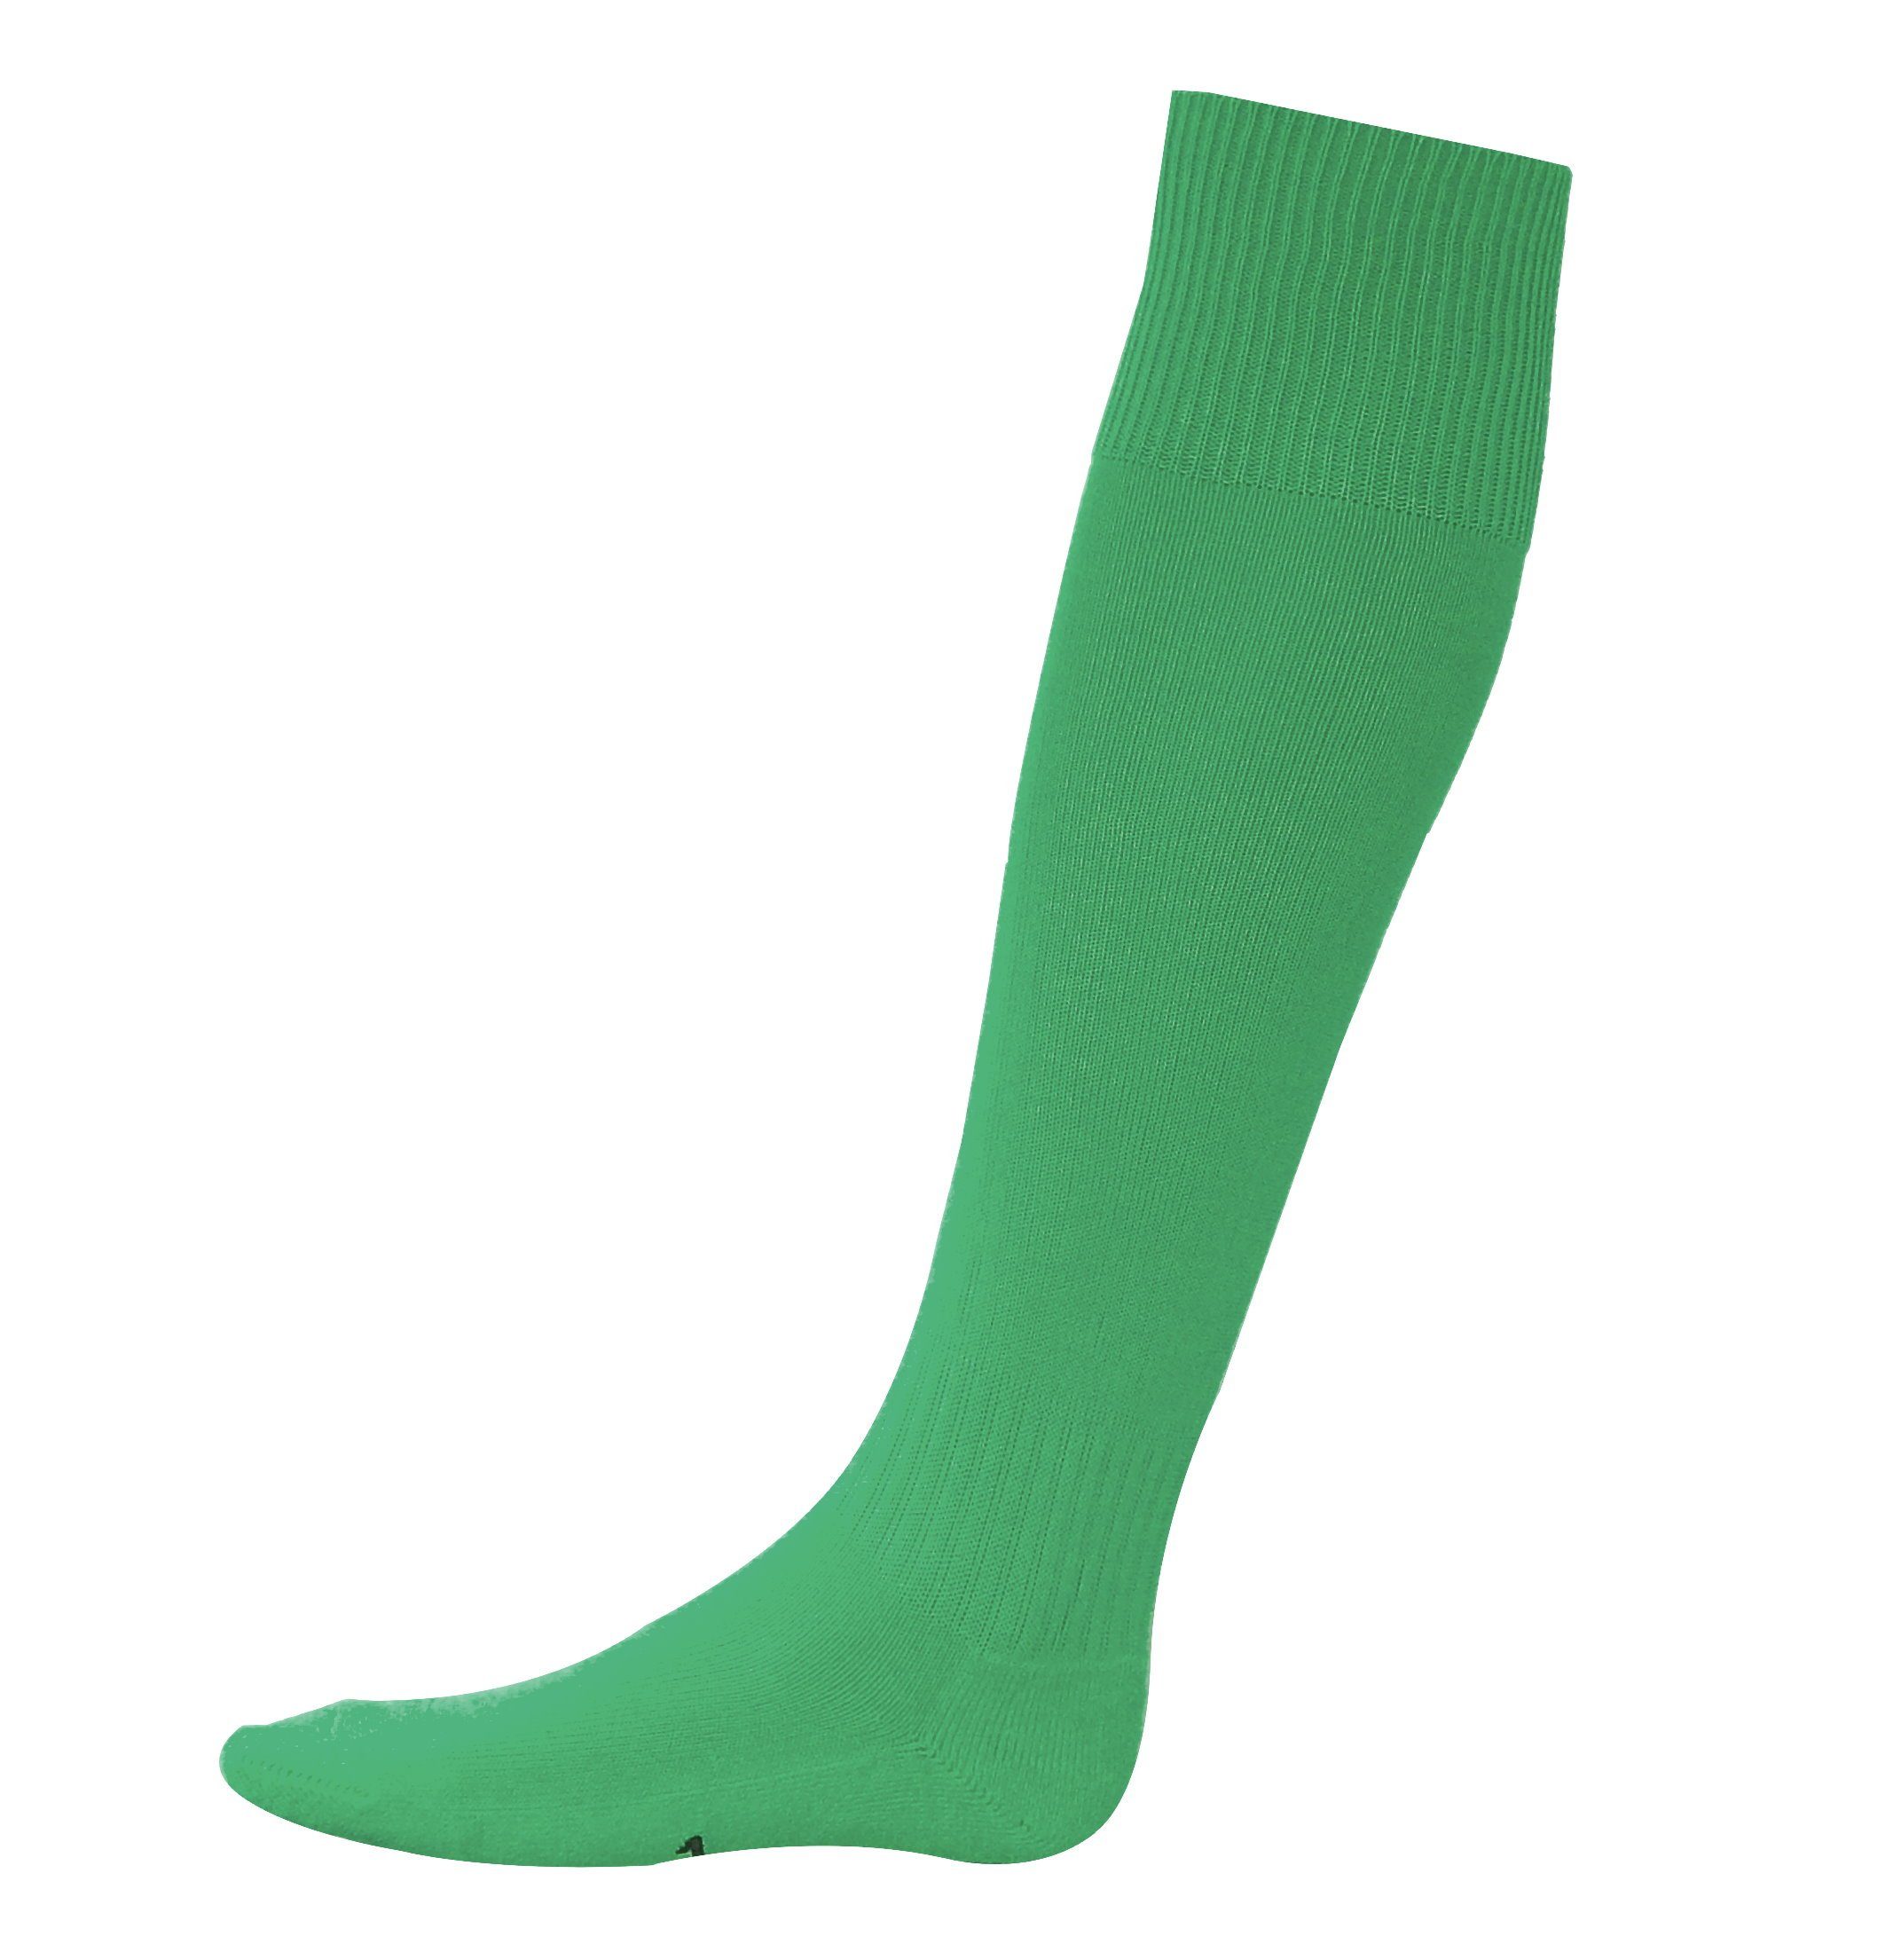 Erima Stutzenstrümpfe 1 Paar Kniestrümpfe Stutzen Fußballstutzen Fußball  Socken Strümpfe online kaufen | OTTO